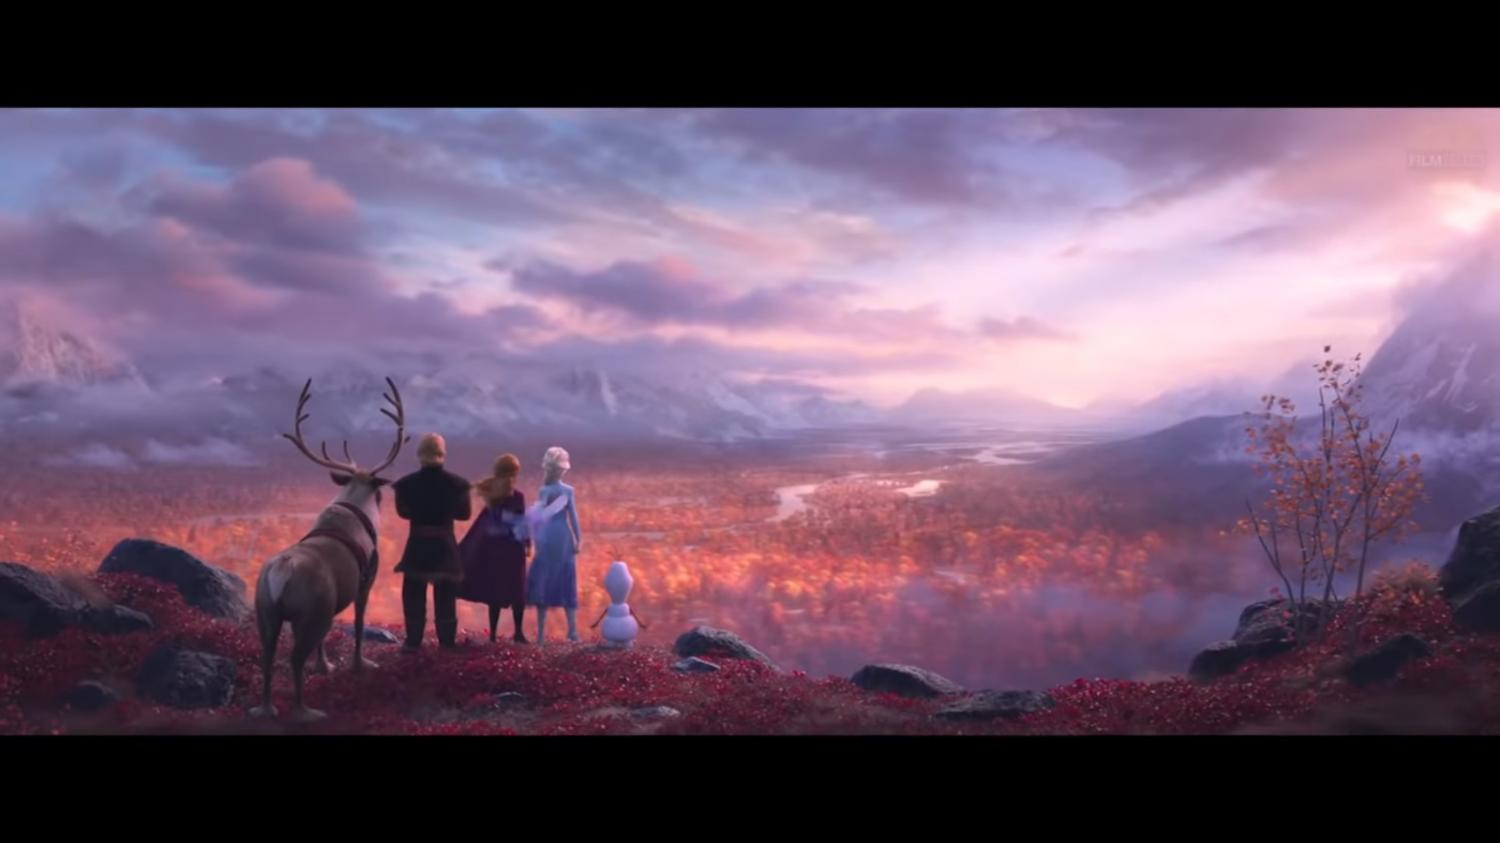 Video Mirá El Primer Avance De Frozen 2 Que Llegaría A Los Cines A Fines De Este Año La 